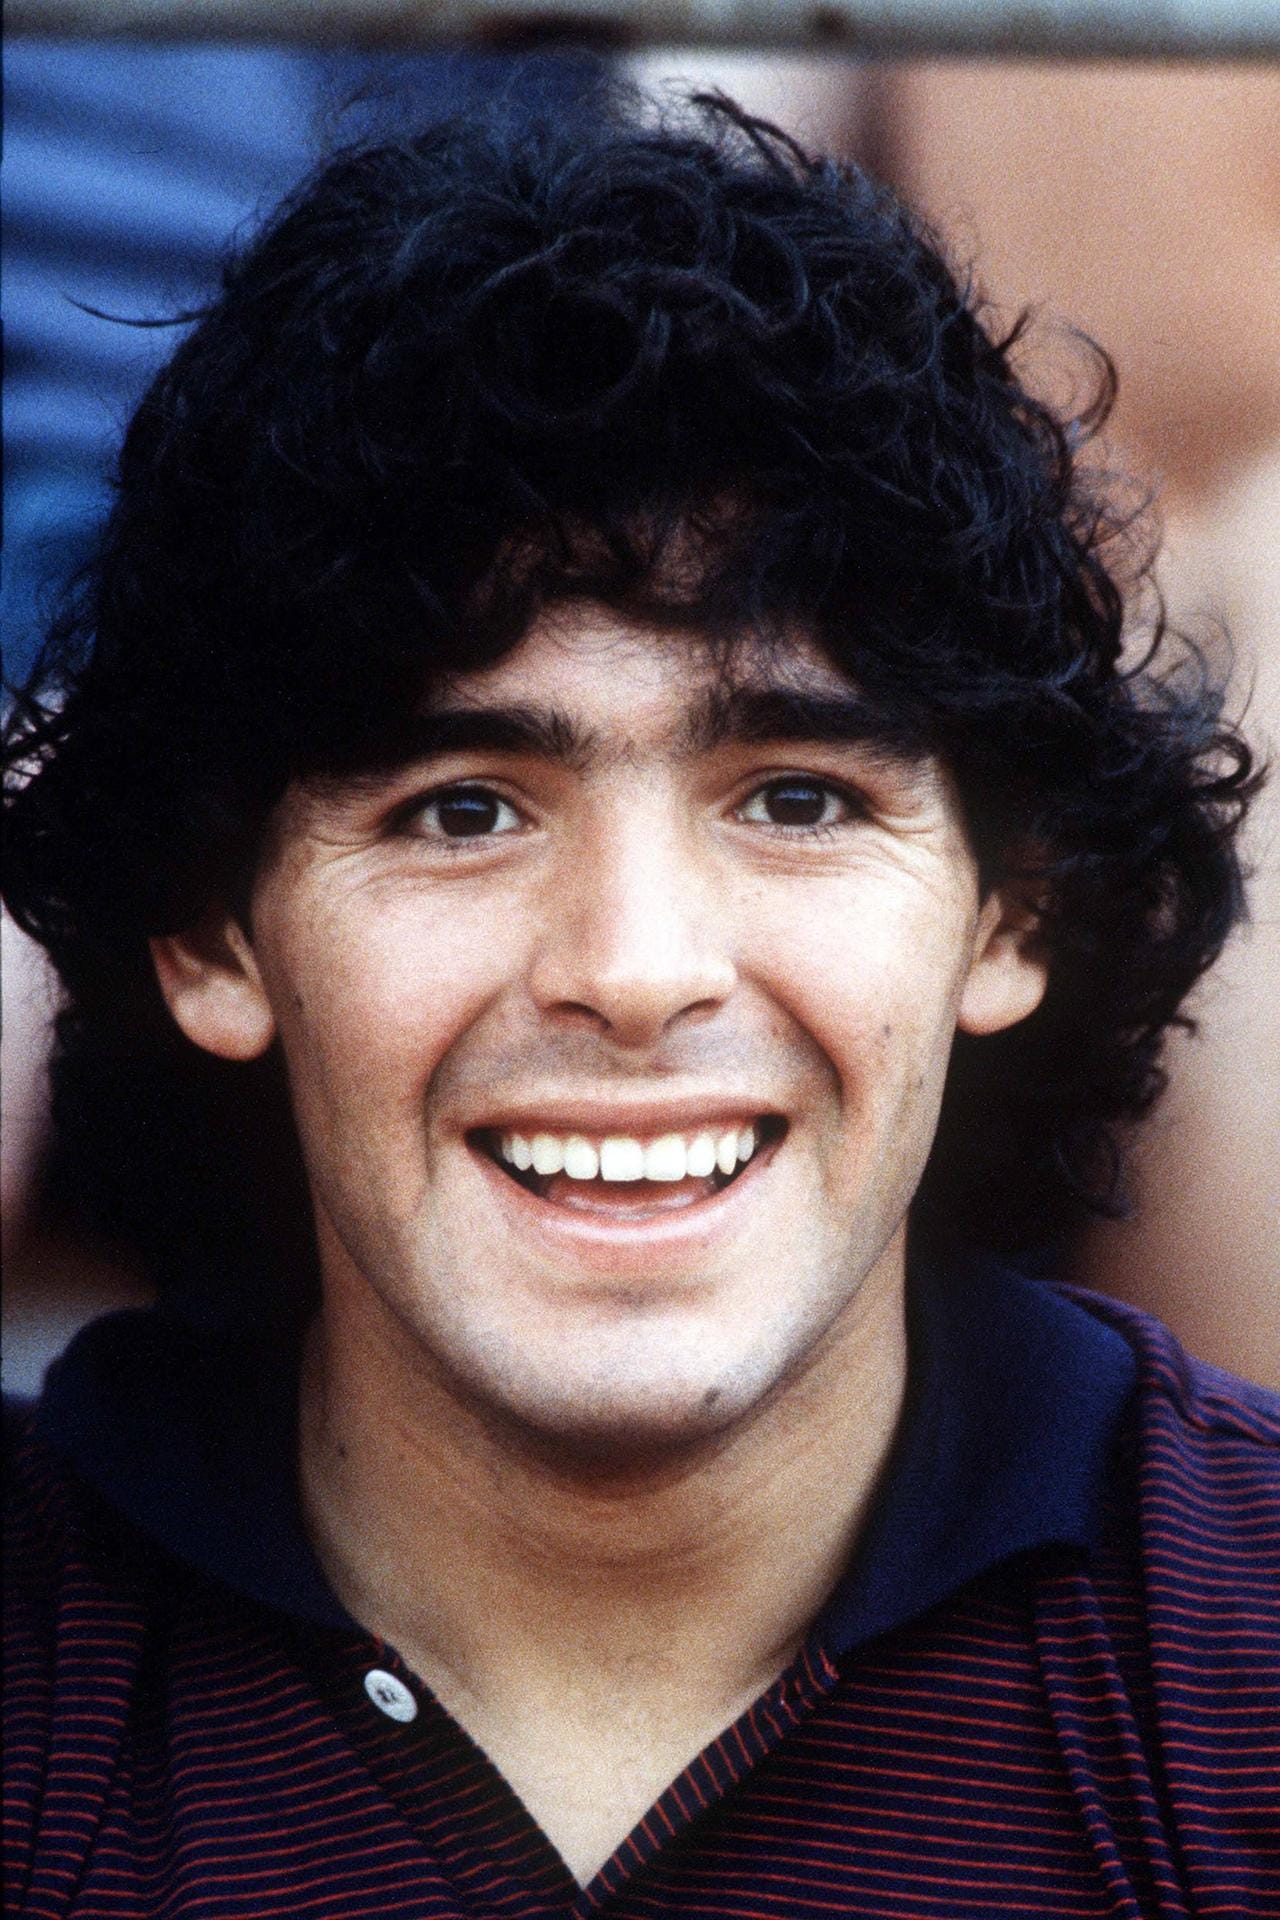 Nachdem er bereits mit 15 Jahren in der ersten argentinischen Liga debütierte, wechselte der in Lanus geborene Diego Armando Maradona 1981 zu den Boca Juniors – dem Klub, der bis heute als die ganz große Liebe des Exzentrikers gilt. Gleich in seinem ersten Pflichtspiel erzielte er beim 4:2-Sieg gegen Talleres de Cordoba zwei Tore. Der Beginn einer einzigartigen Beziehung. Maradona wird mit Boca direkt argentinischer Meister...